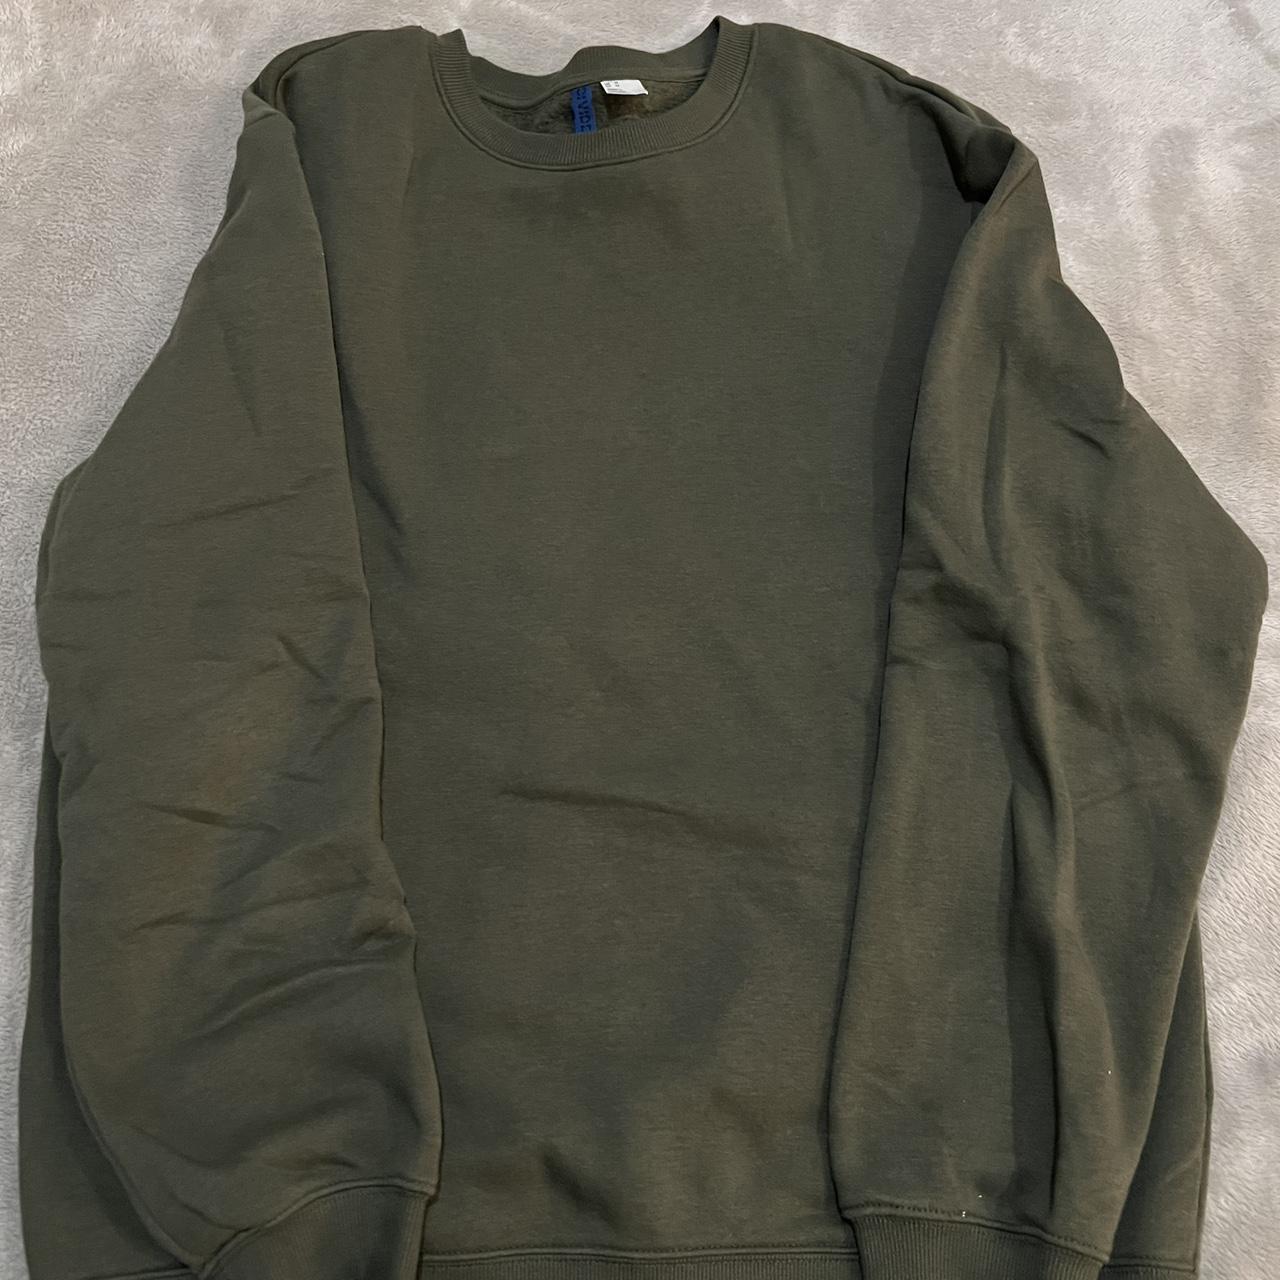 Green pullover - Depop